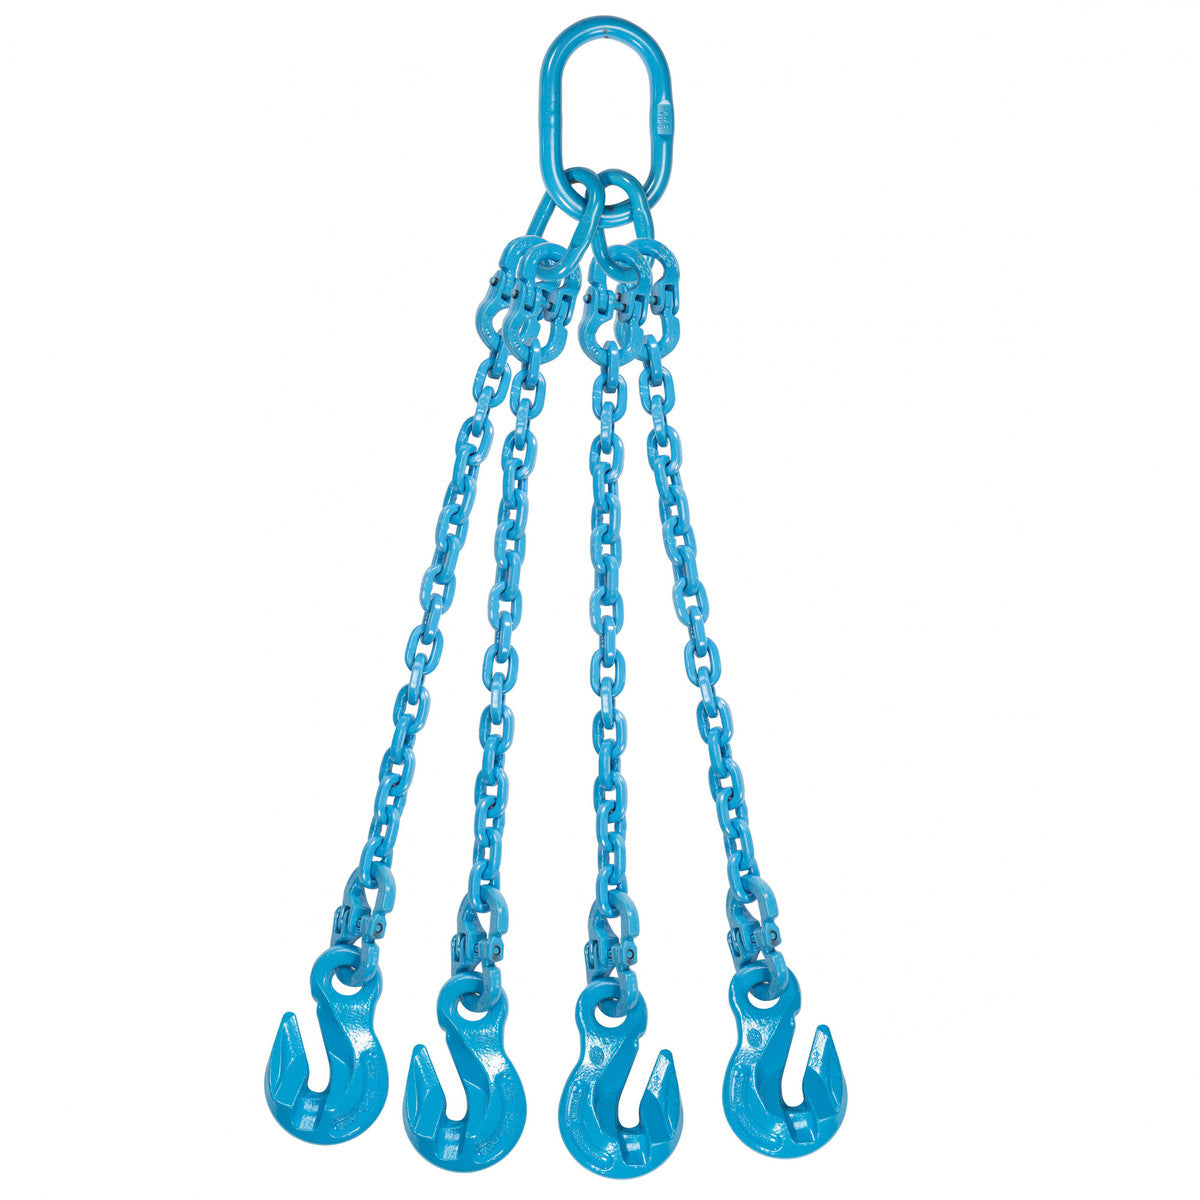 9/32" x 14' - Pewag 4 Leg Chain Sling w/ Grab Hooks - Grade 120